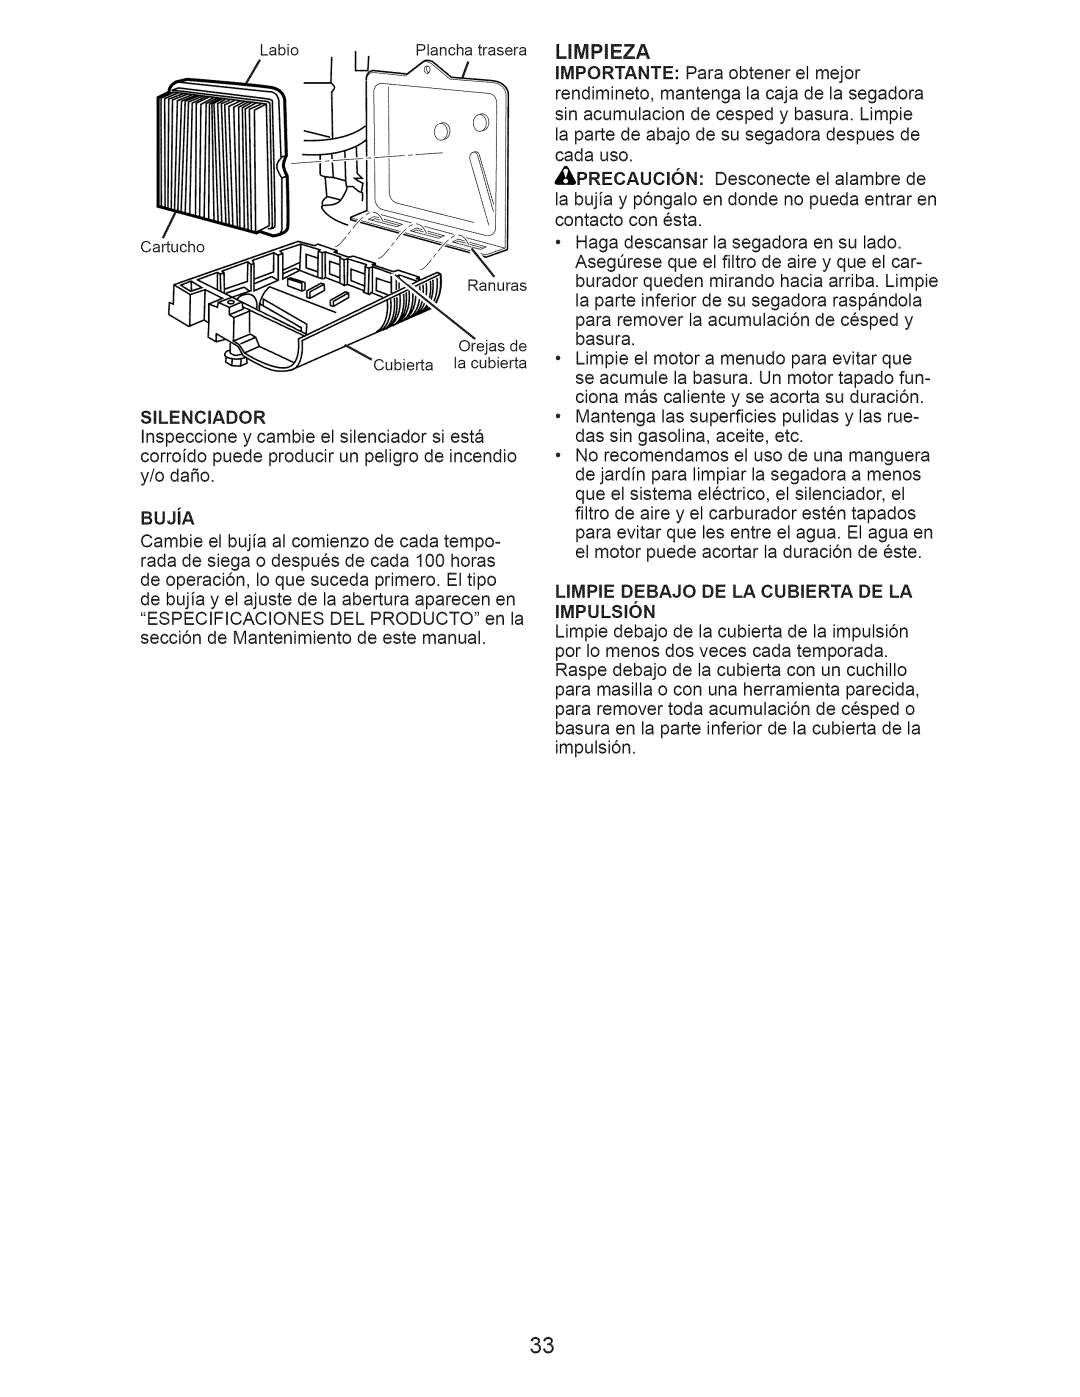 Craftsman 917.376230 manual Limpieza, LIMPIE DEBAJO DE LA CUBIERTA DE LA IMPULSI6N 